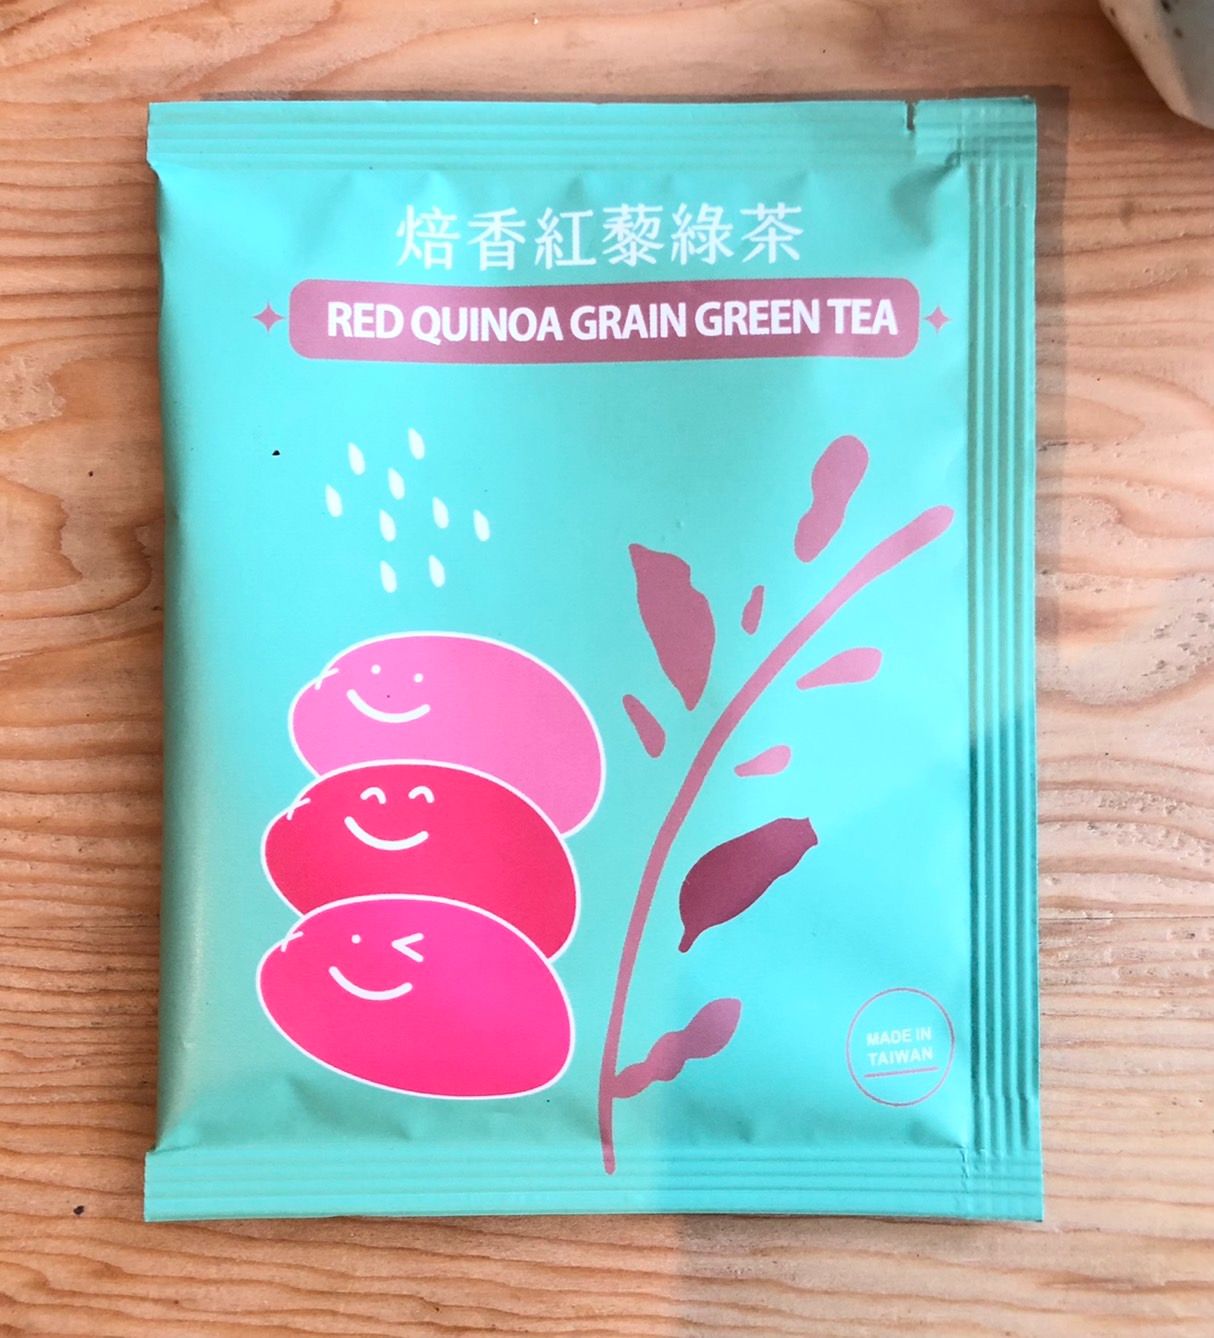 焙香紅藜綠茶